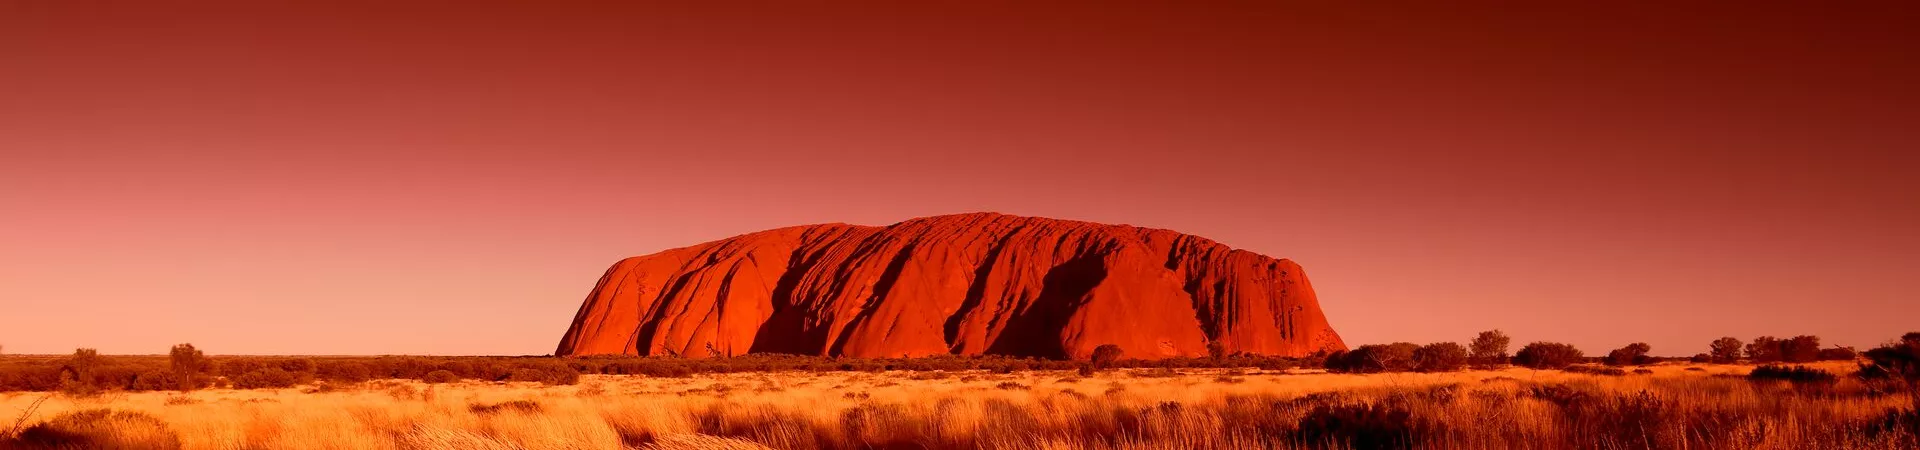 Uluru in Australia against a red sky